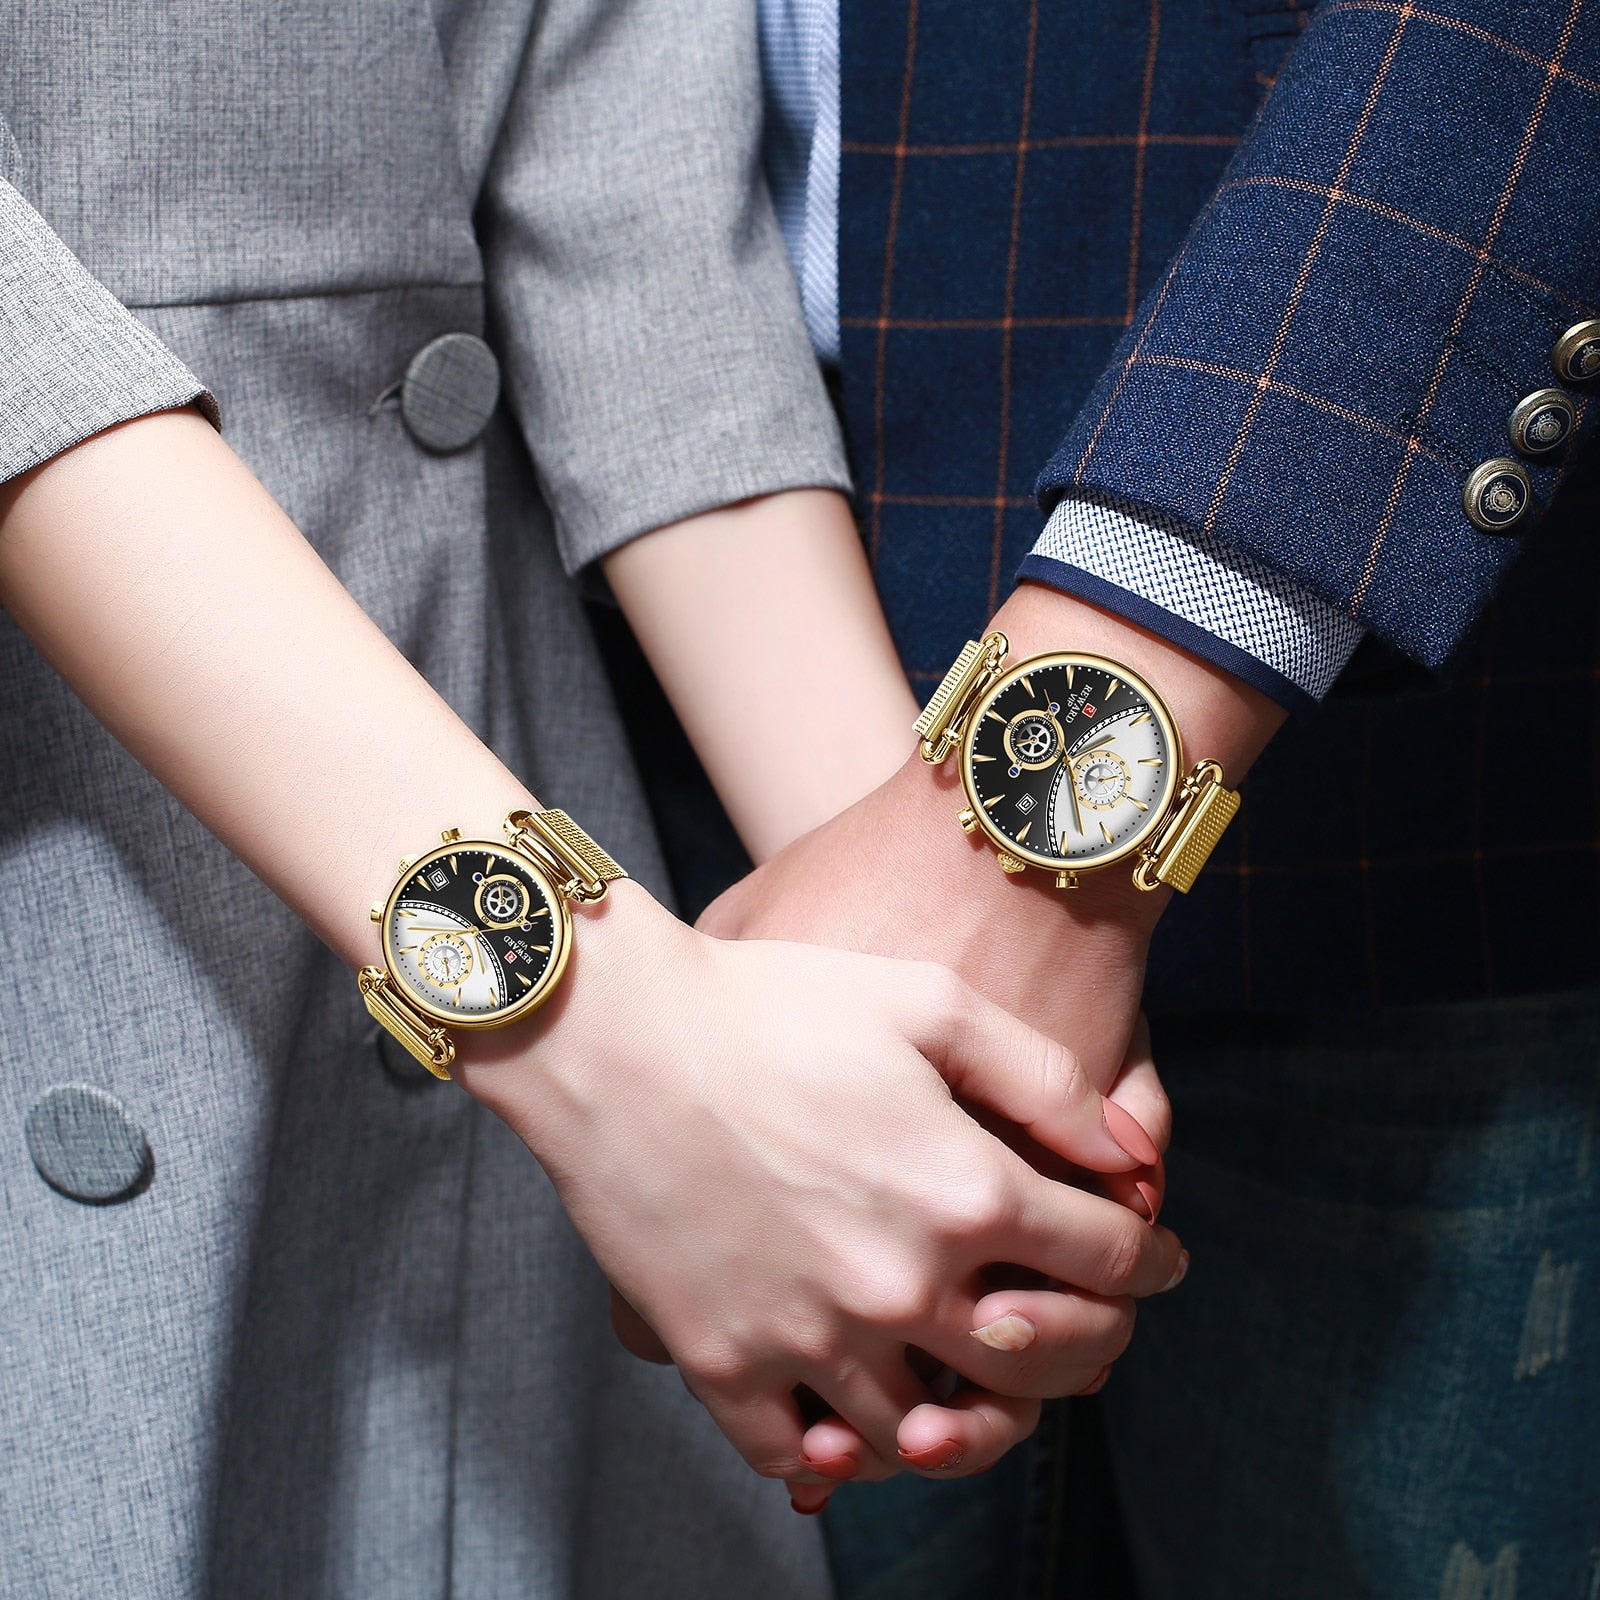 Reward Fashion Quartz Watch Chronograph Calendar Timepieces Stainless Steel Mesh Wristwatches Waterproof Women Wrist Watches